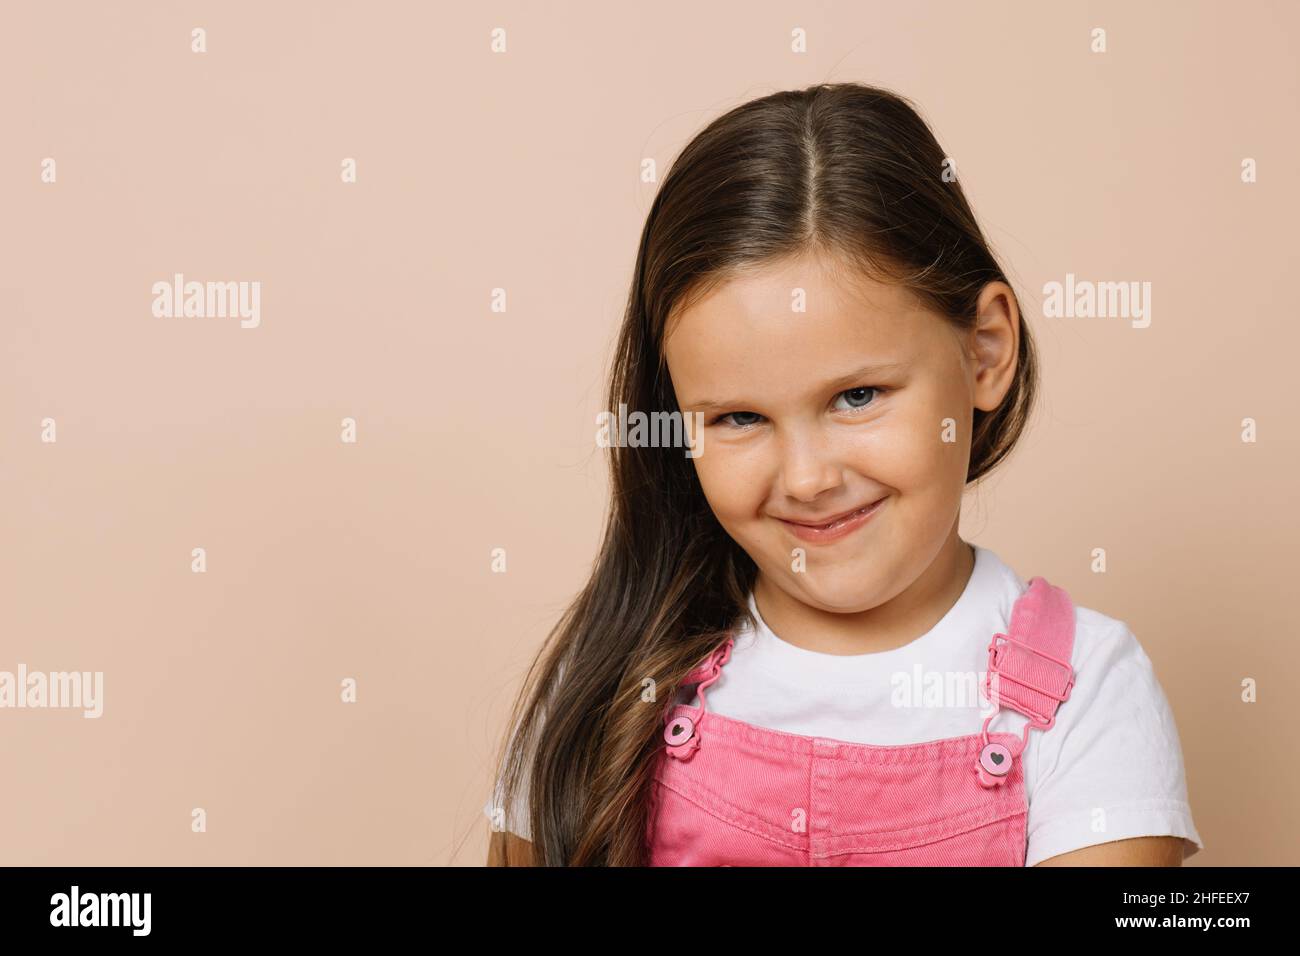 Nahaufnahme Porträt eines weiblichen Kindes mit leuchtenden hellen Augen, bescheidenes Lächeln und mürrischen Blick auf die Kamera in leuchtend rosa Jumpsuit und weiß t Stockfoto